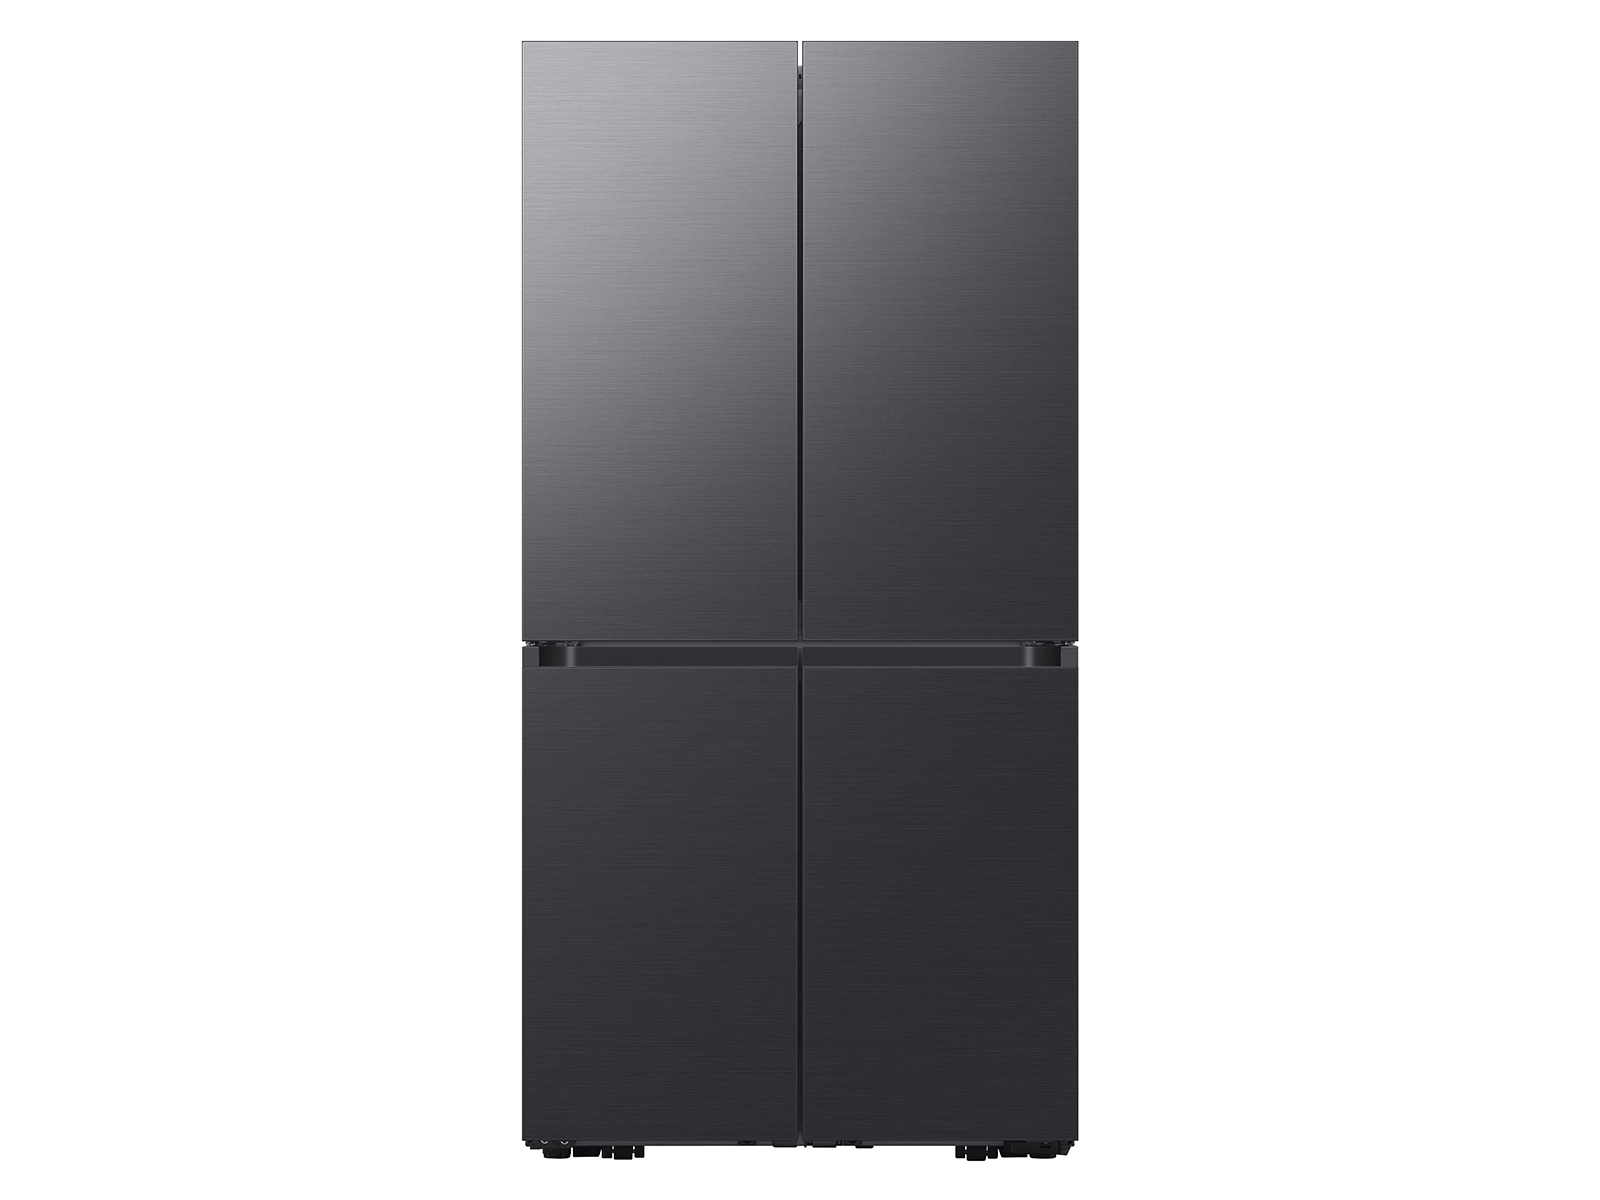 Samsung 23-Cubic-Foot Four-Door RF23A9675 Refrigerator در آمریکا